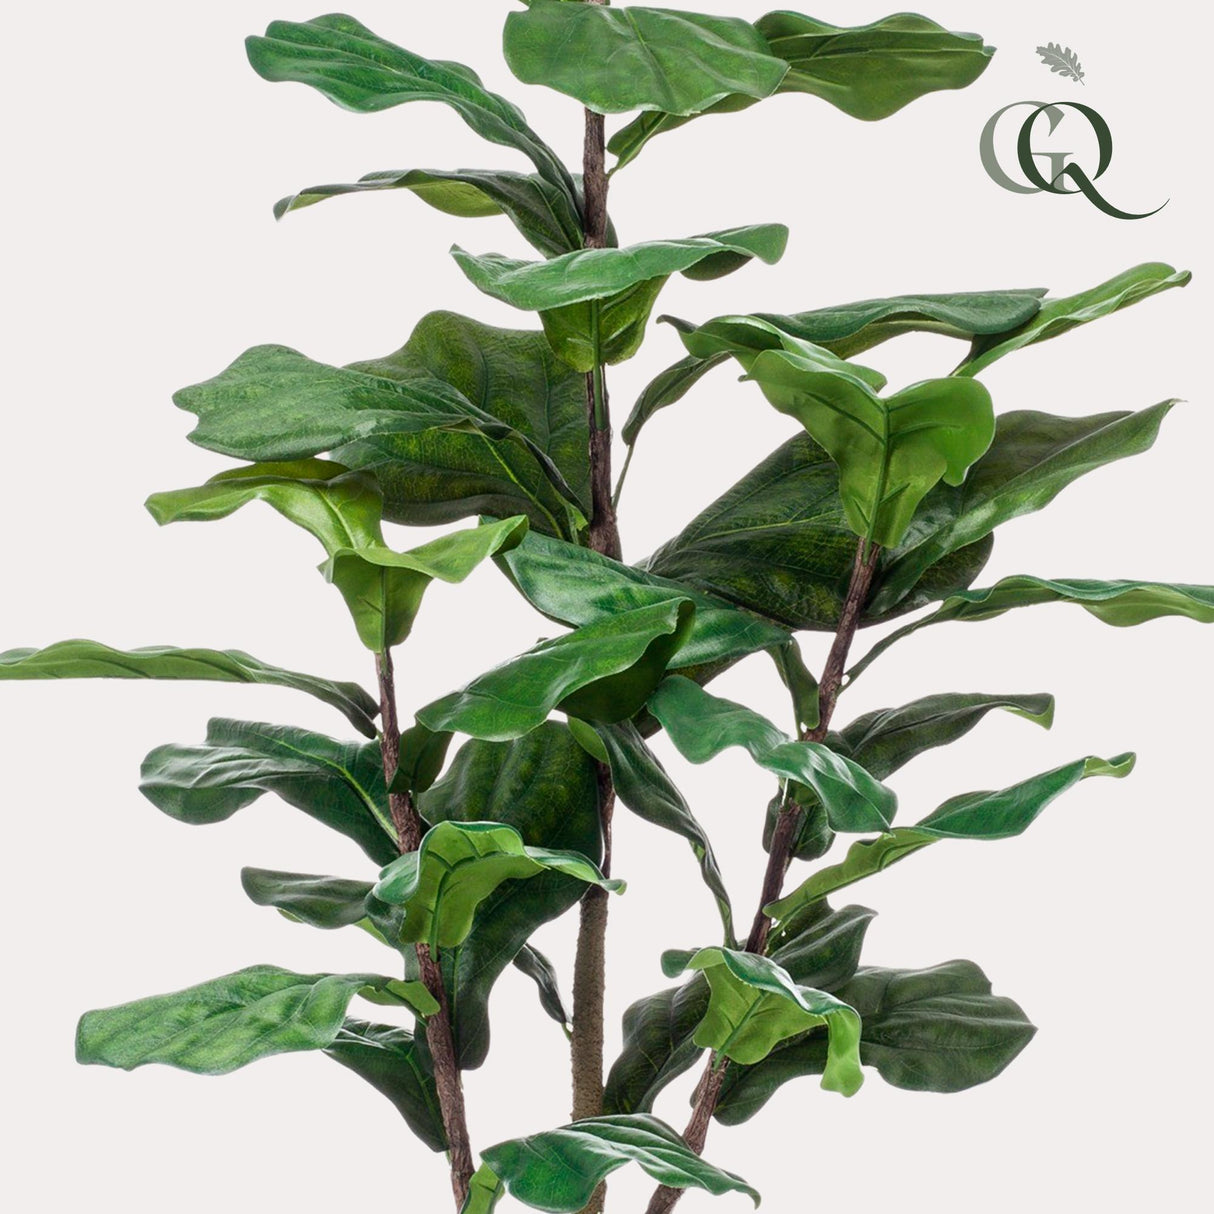 Ficus Lyrata plante artificielle h125cm, Ø14cm